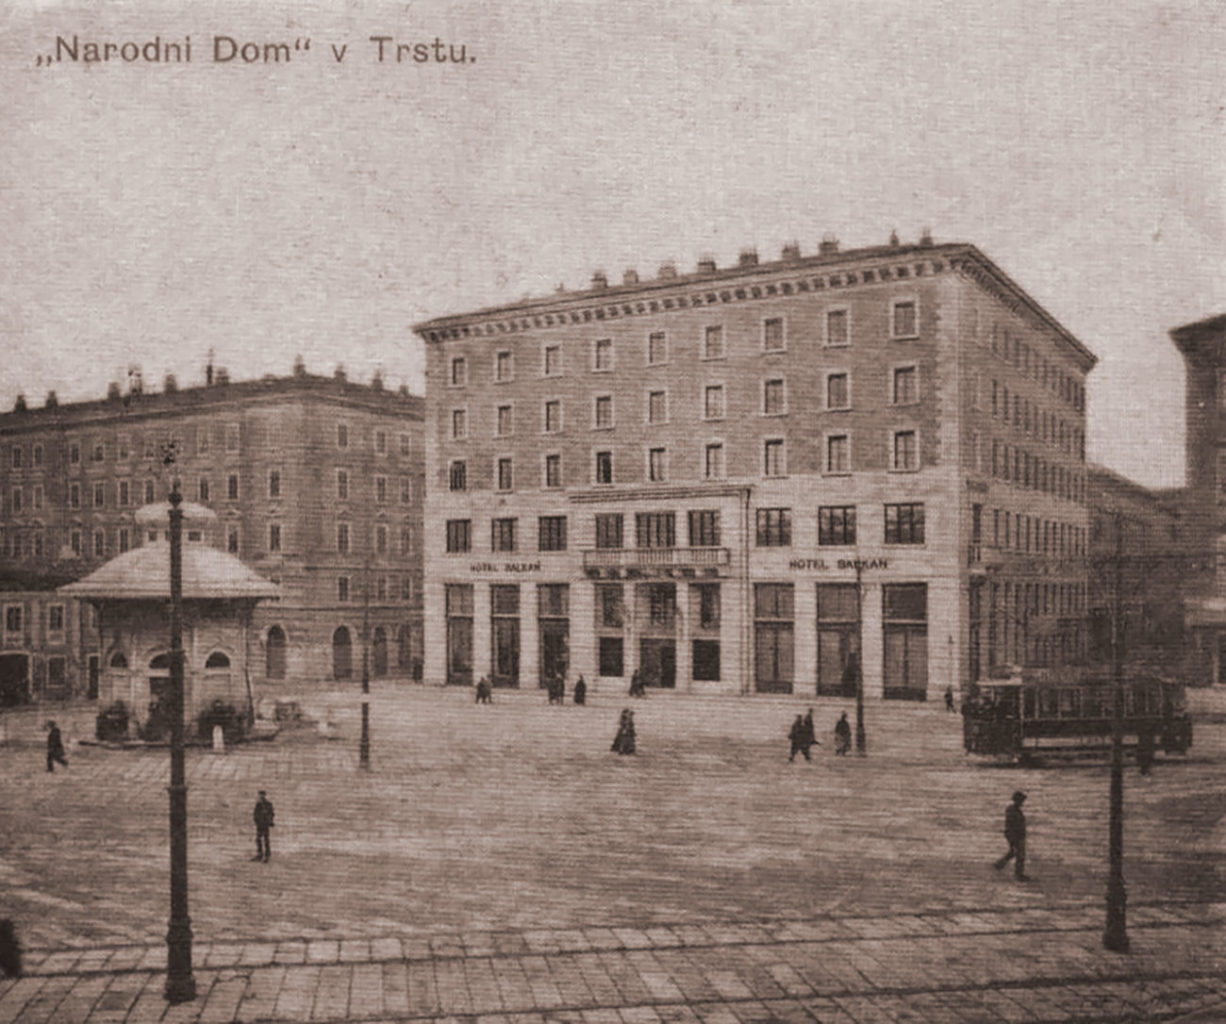 Narodni Dom Trieste